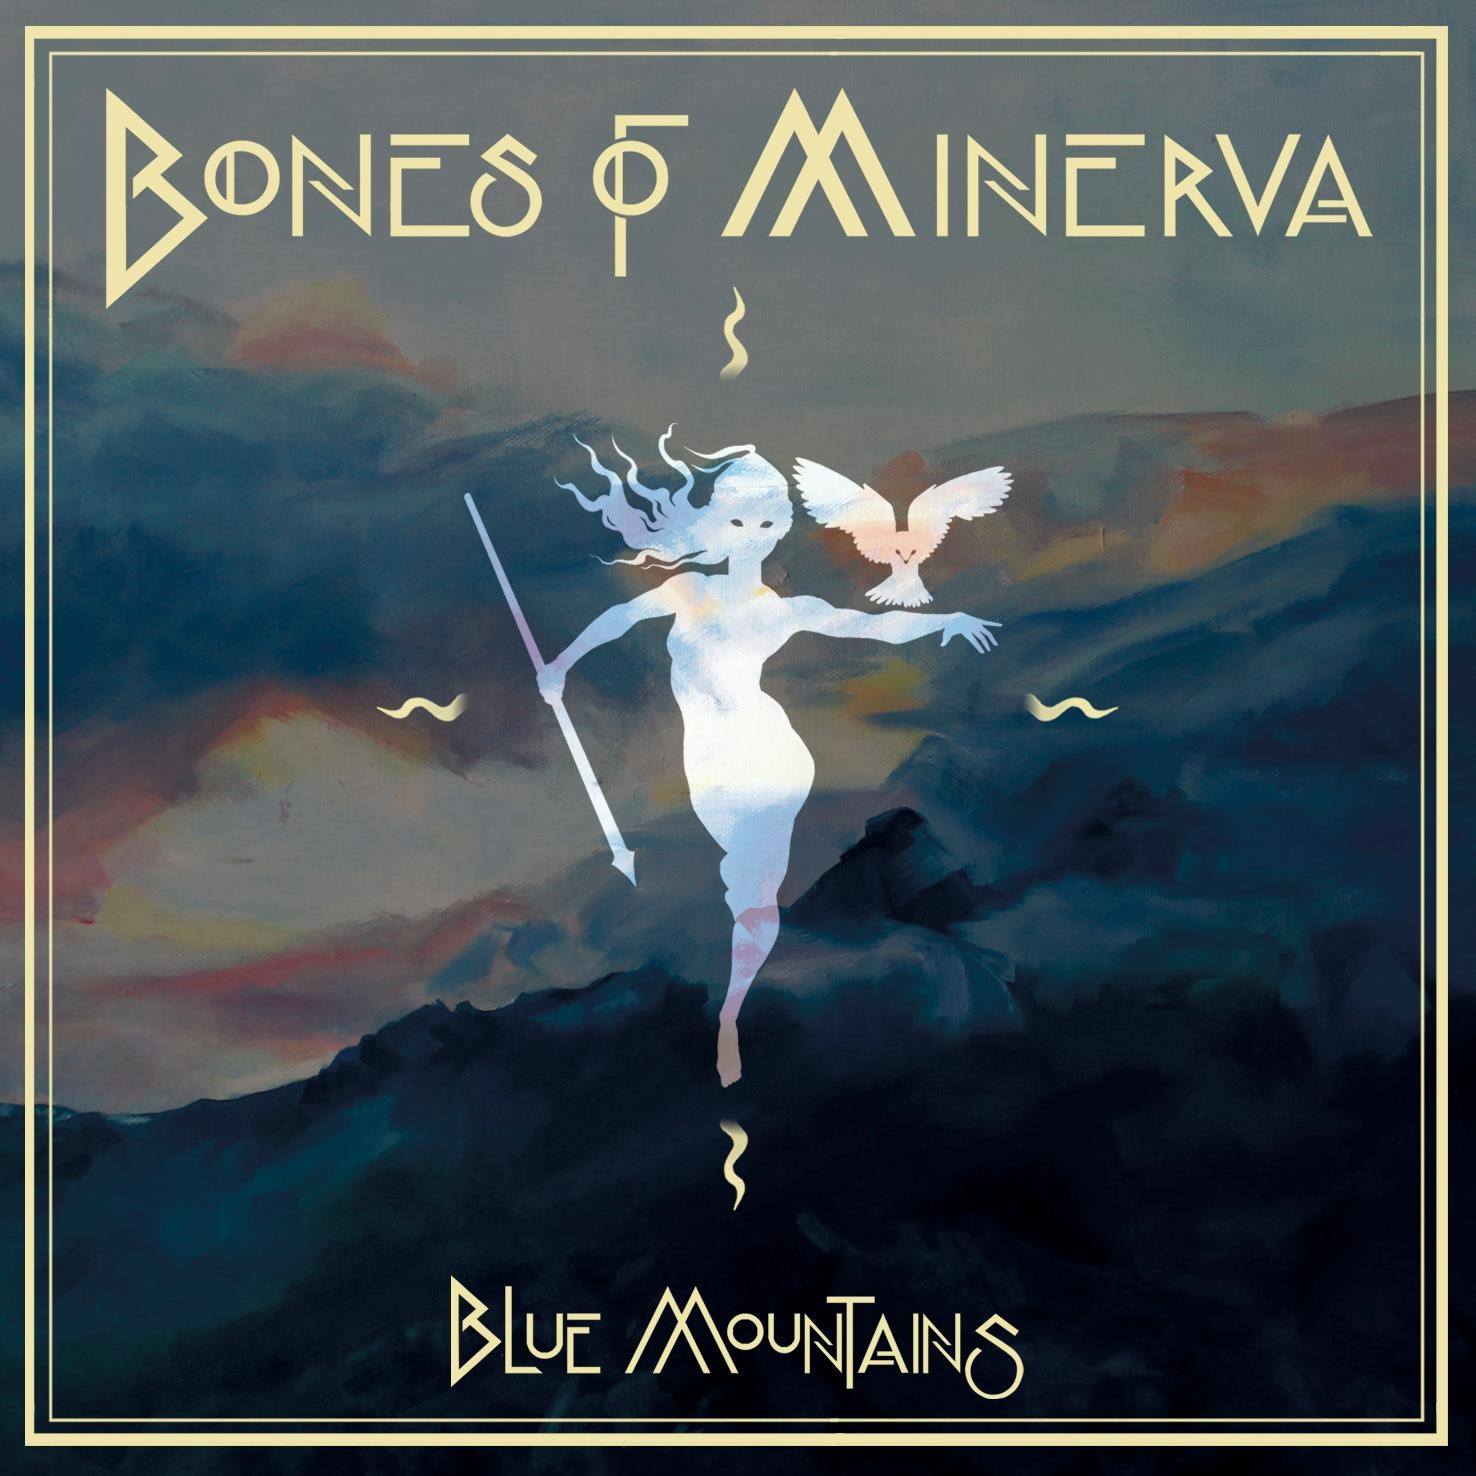 BONES OF MINERVA presentan la reedición de su disco “Blue Mountains”